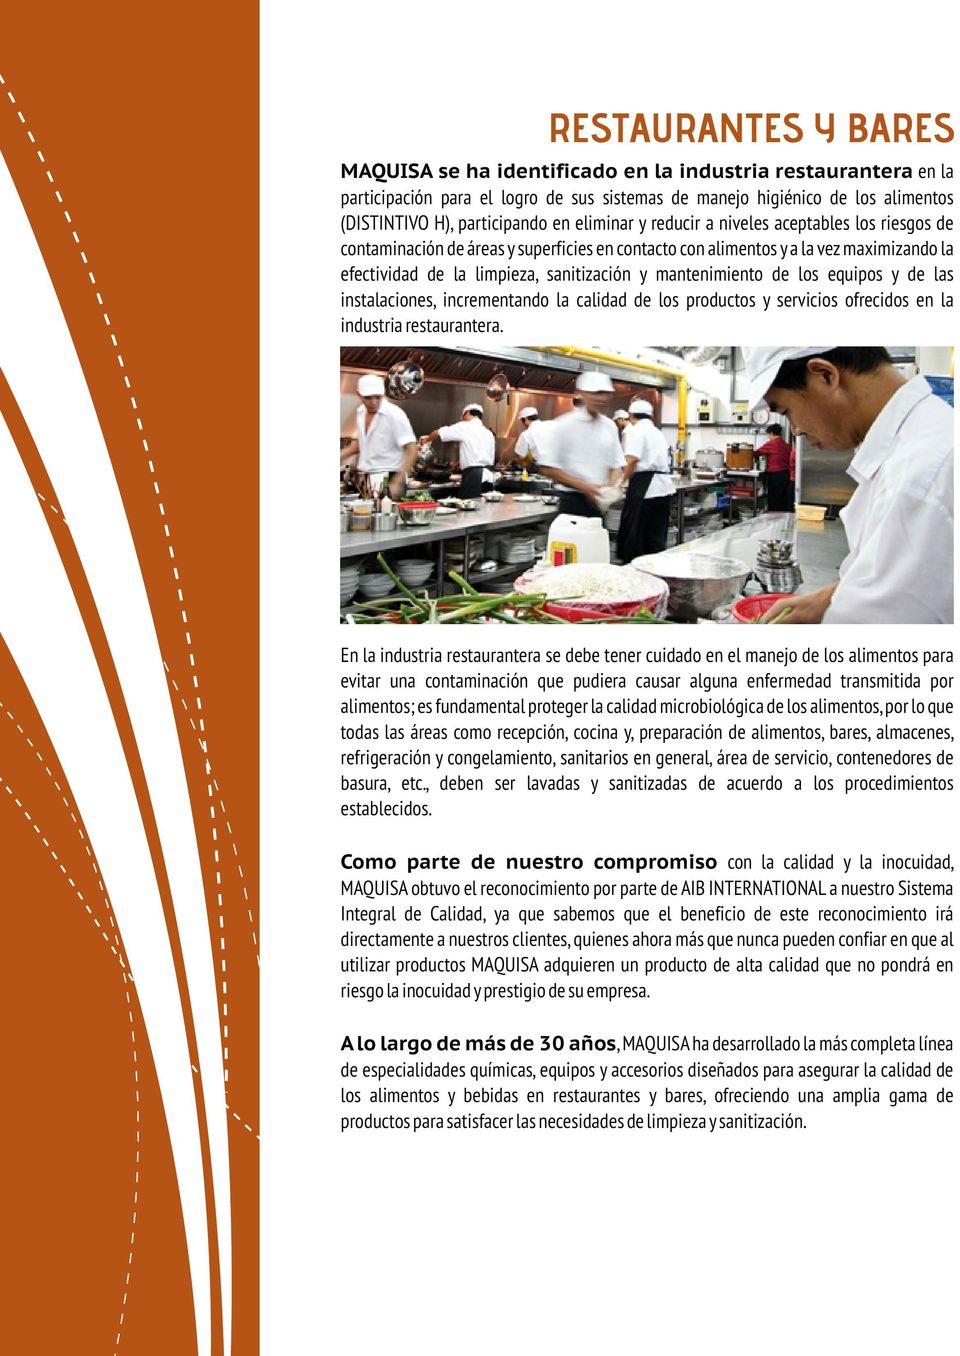 mantenimiento de los equipos y de las instalaciones, incrementando la calidad de los productos y servicios ofrecidos en la industria restaurantera.